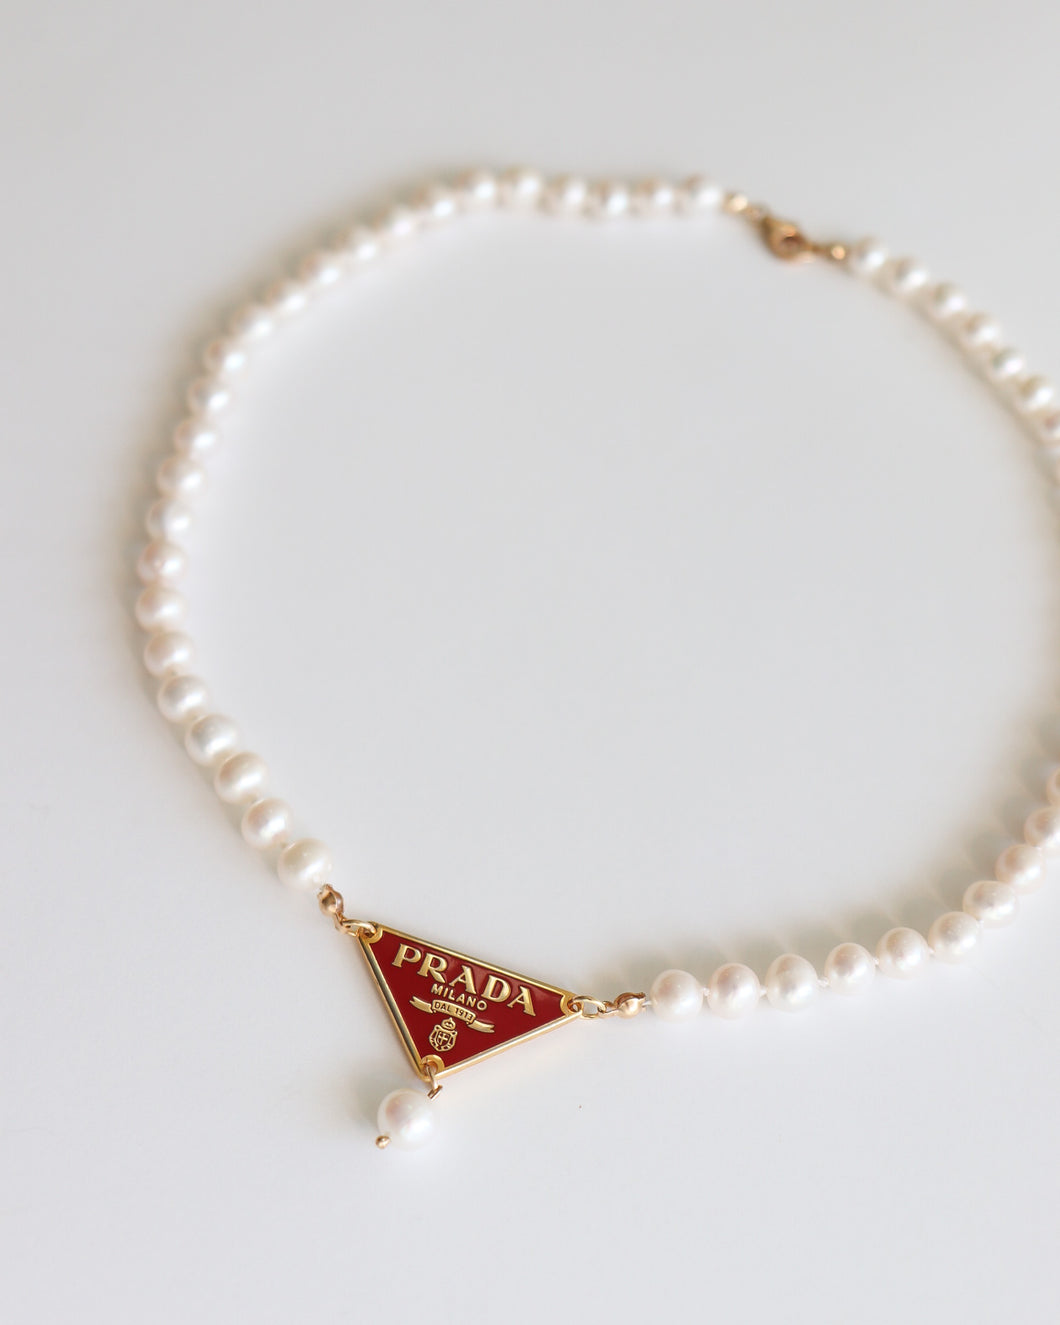 prada logo necklace